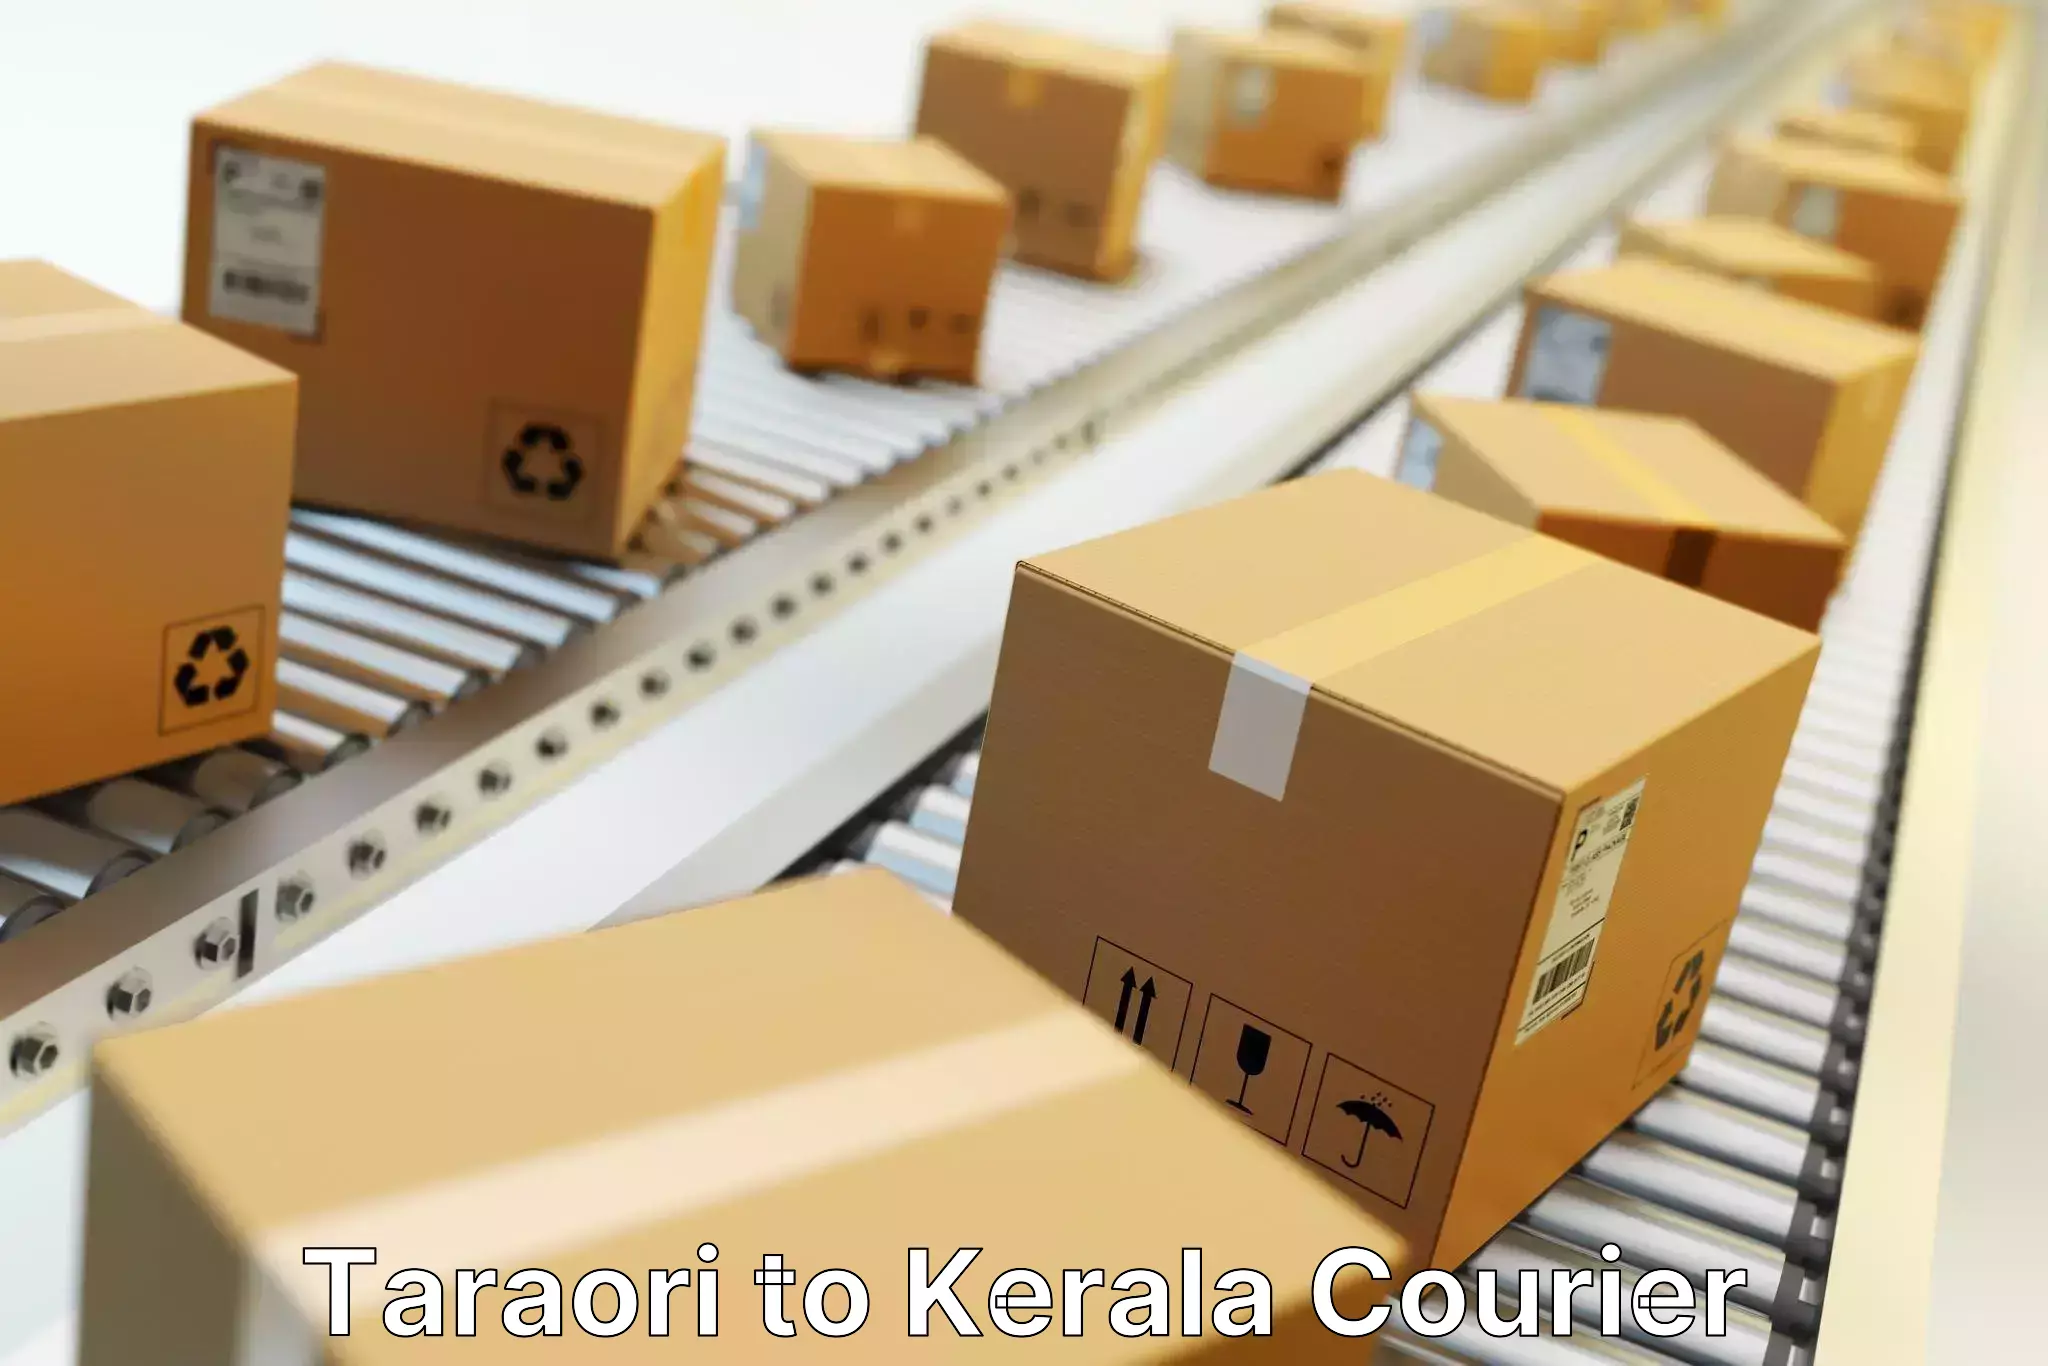 Large package courier Taraori to Thiruvananthapuram